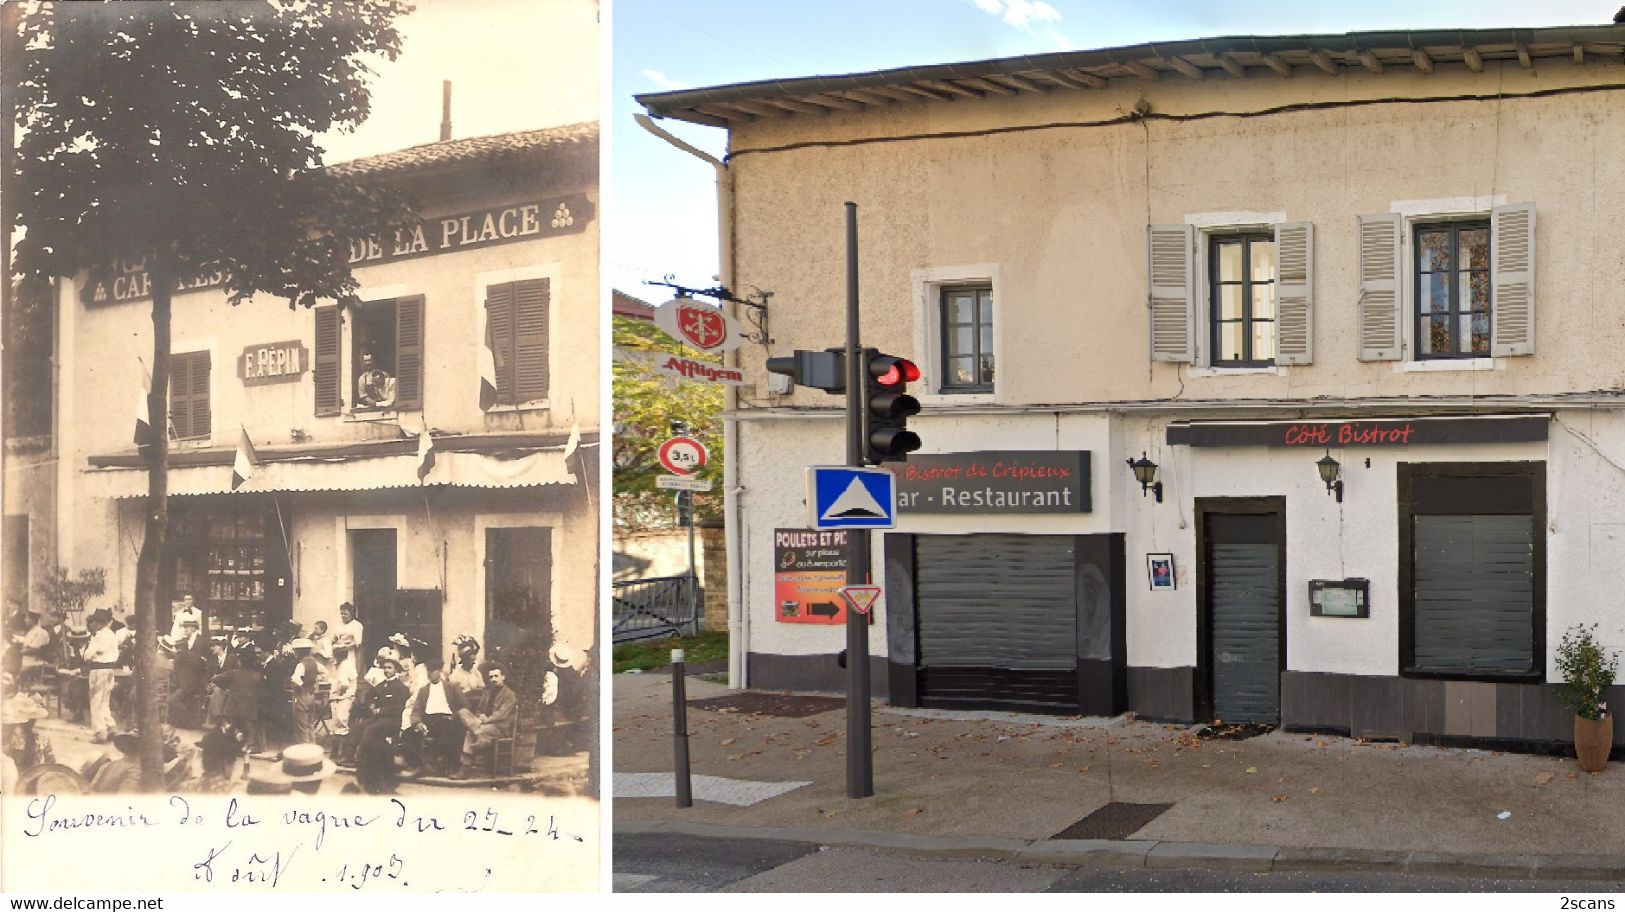 69 - RILLIEUX-LA-PAPE (30, route de Genève) - CARTE-PHOTO Café-Restaurant François PÉPIN - (FÊTE des 23 et 24 août 1903)